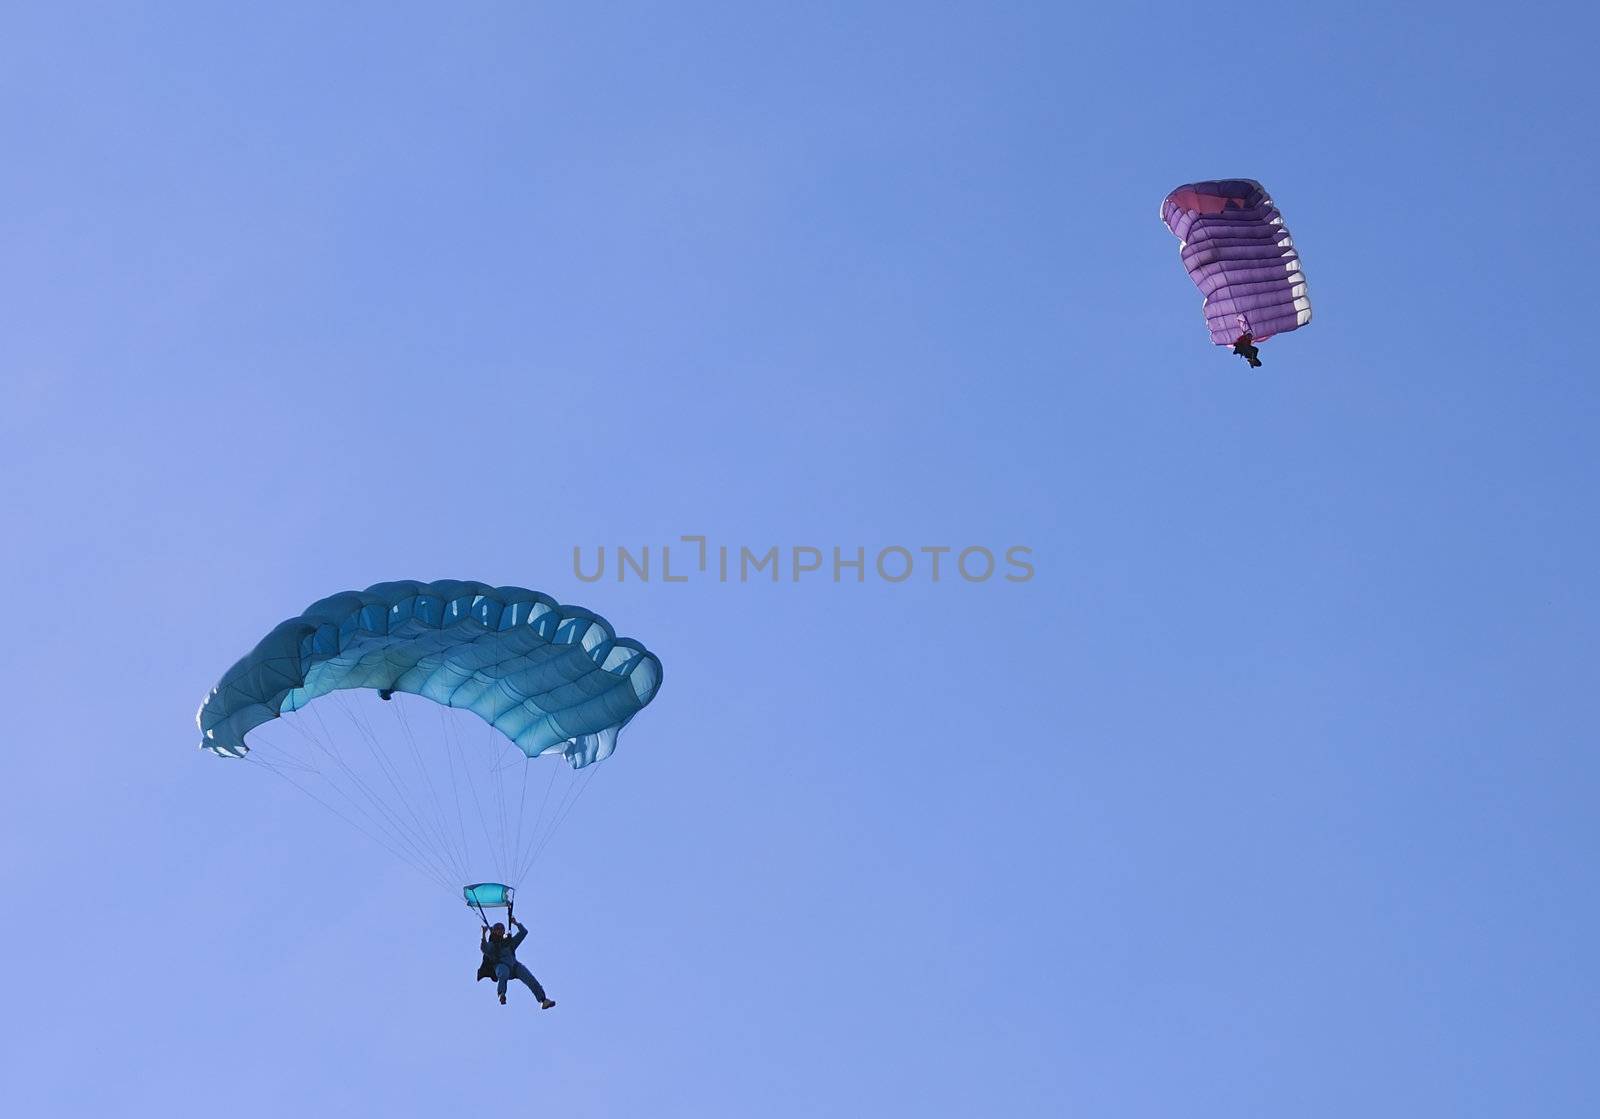 Two parachutes by whitechild